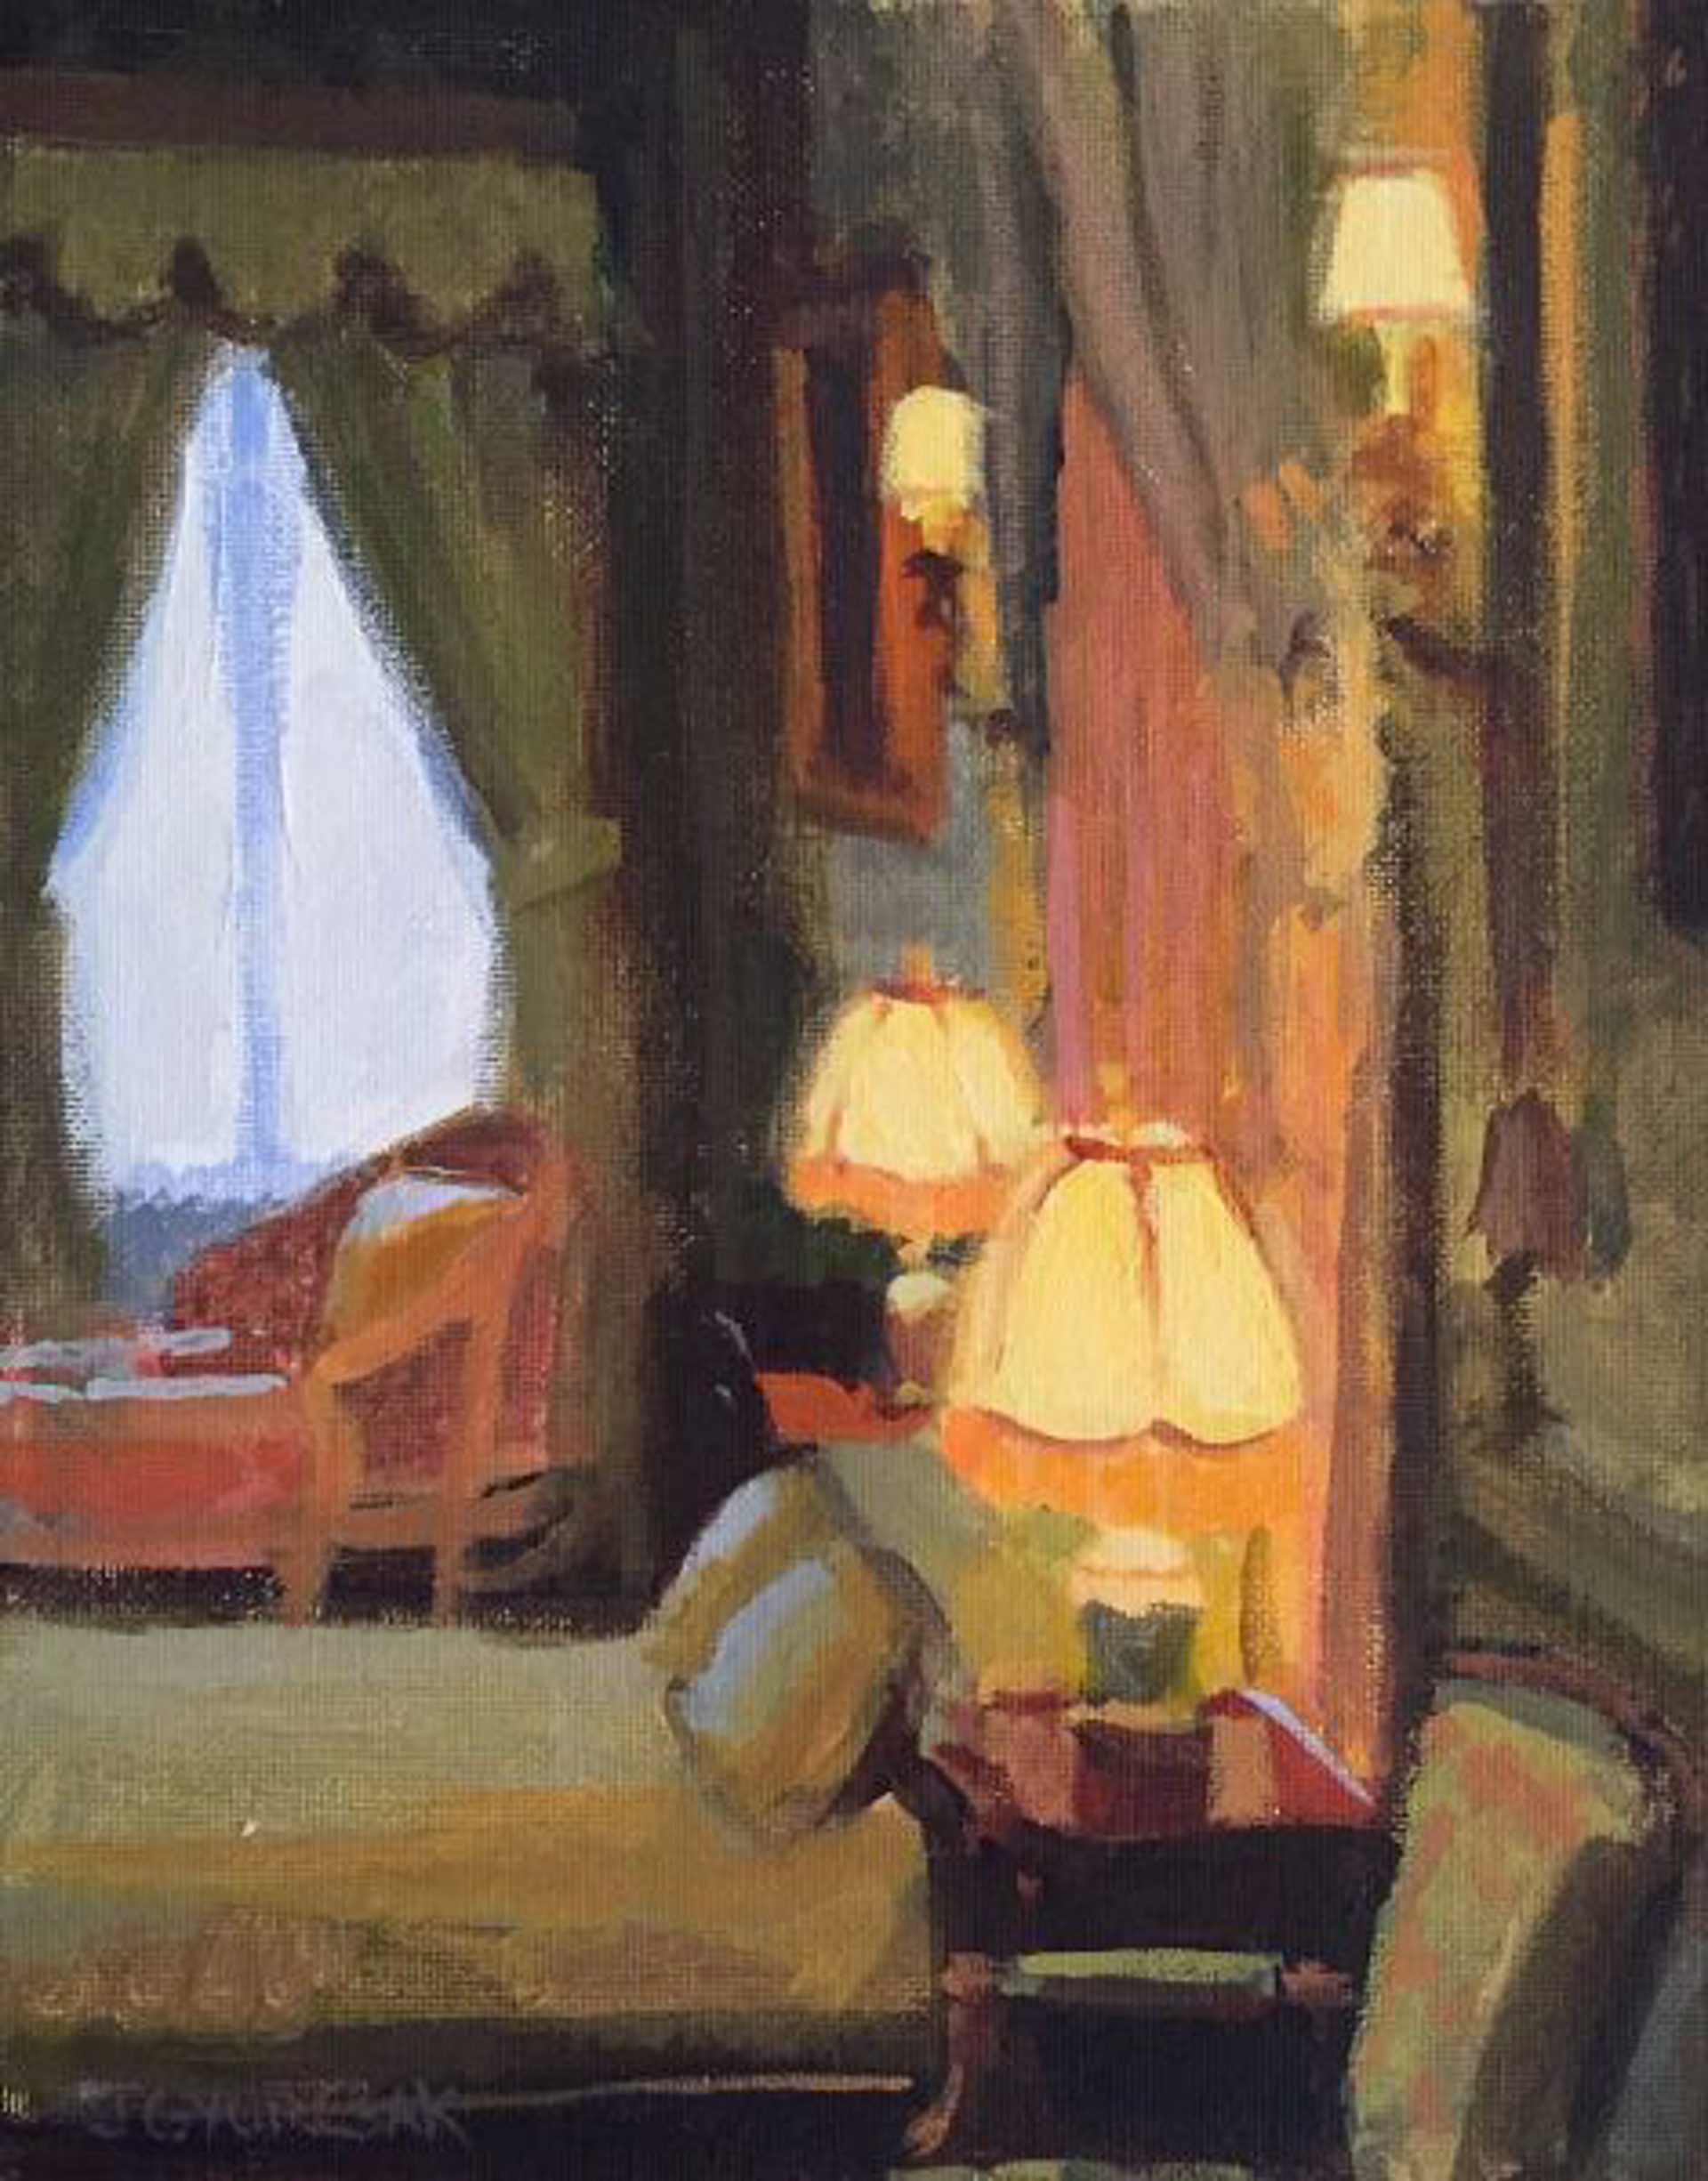 Lamp Lit Room by Joe Gyurcsak